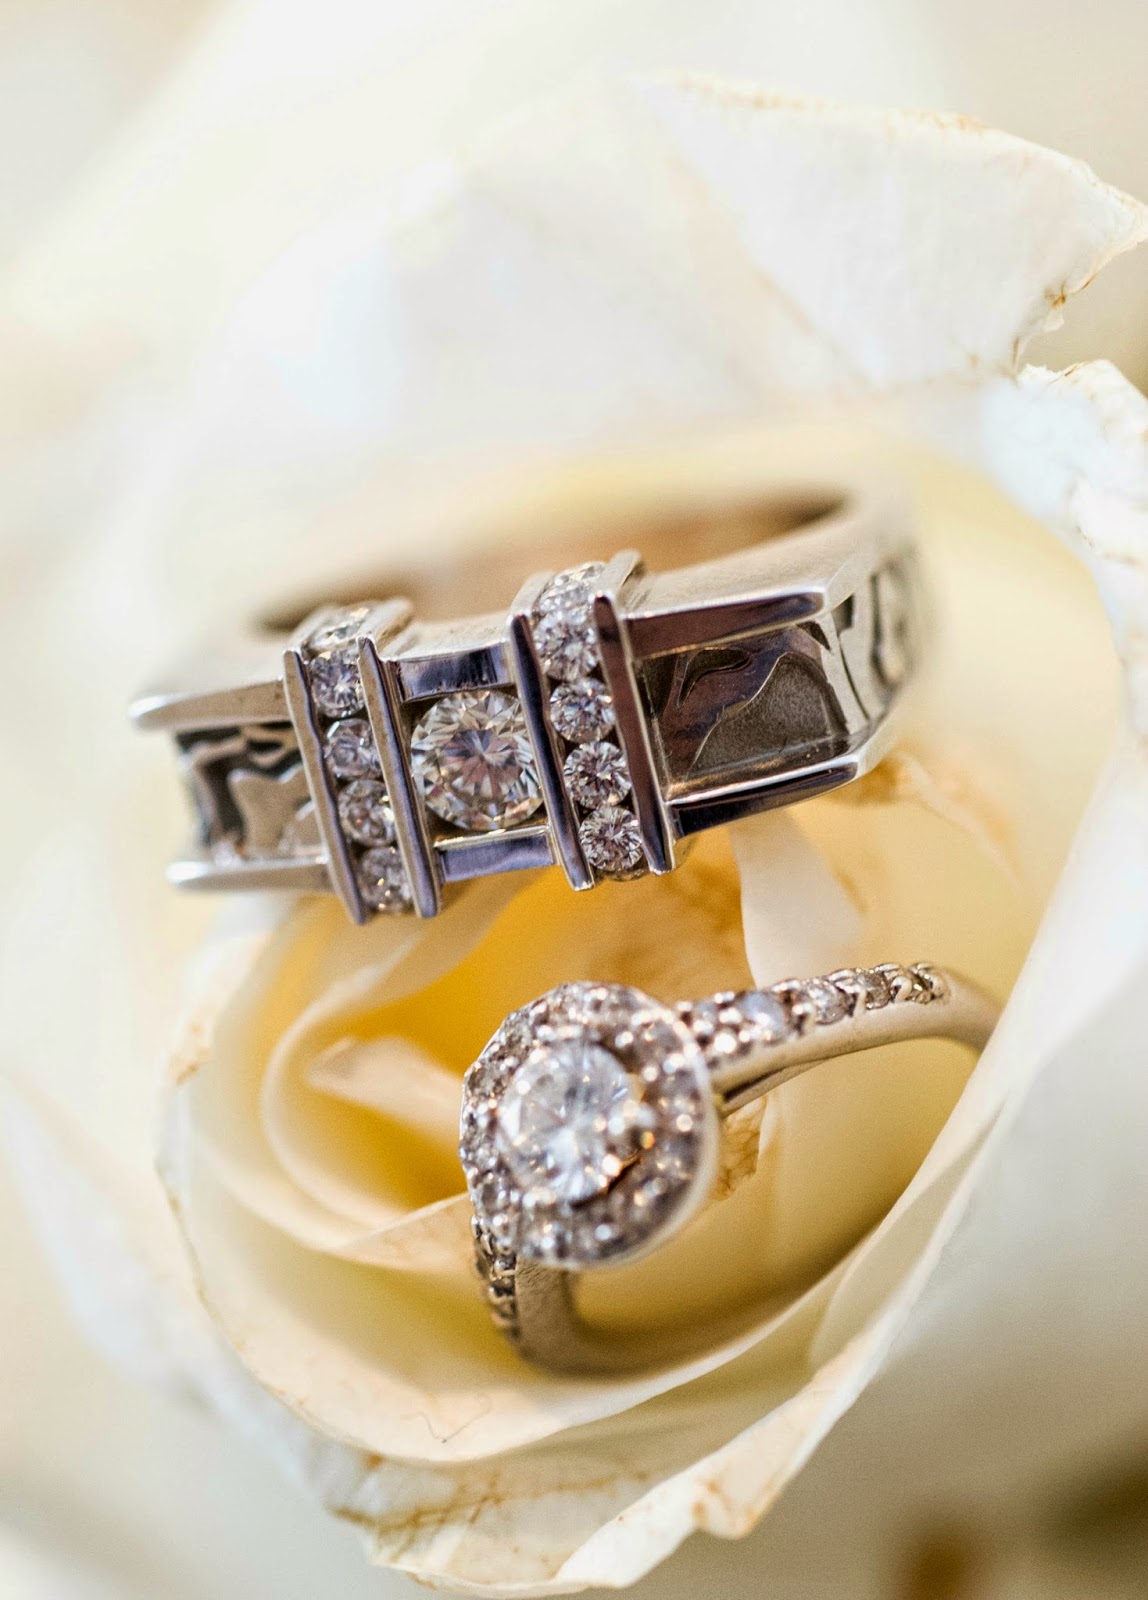 Δείτε το πιο εντυπωσιακό δαχτυλίδι πρότασης γάμου... [photo] - Φωτογραφία 2